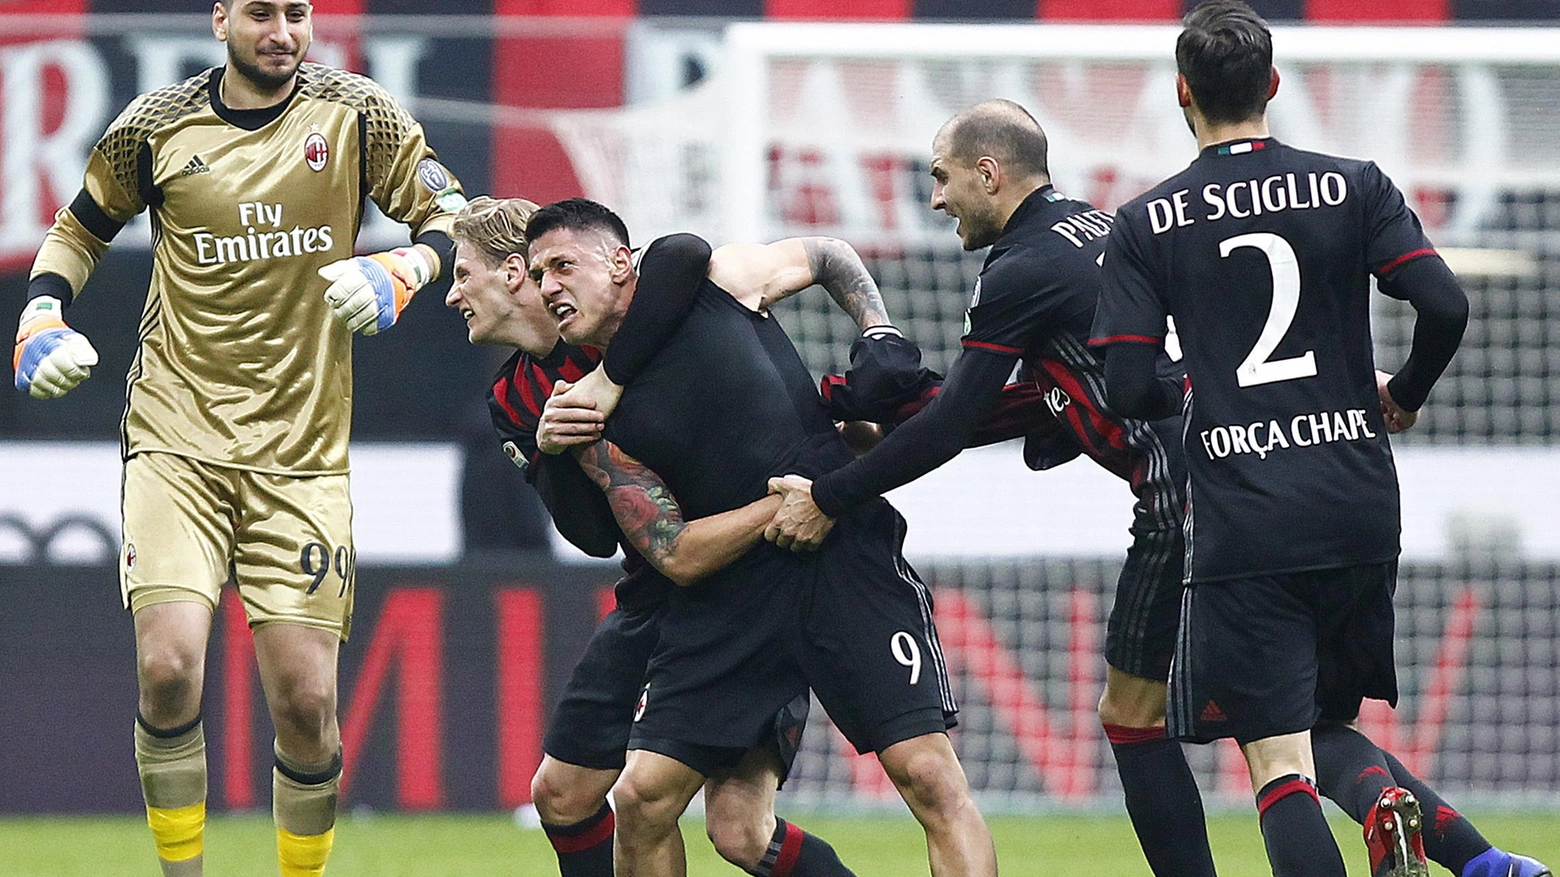 La gioia dei giocatori del Milan dopo la rete del due a uno (LaPresse/Spada)